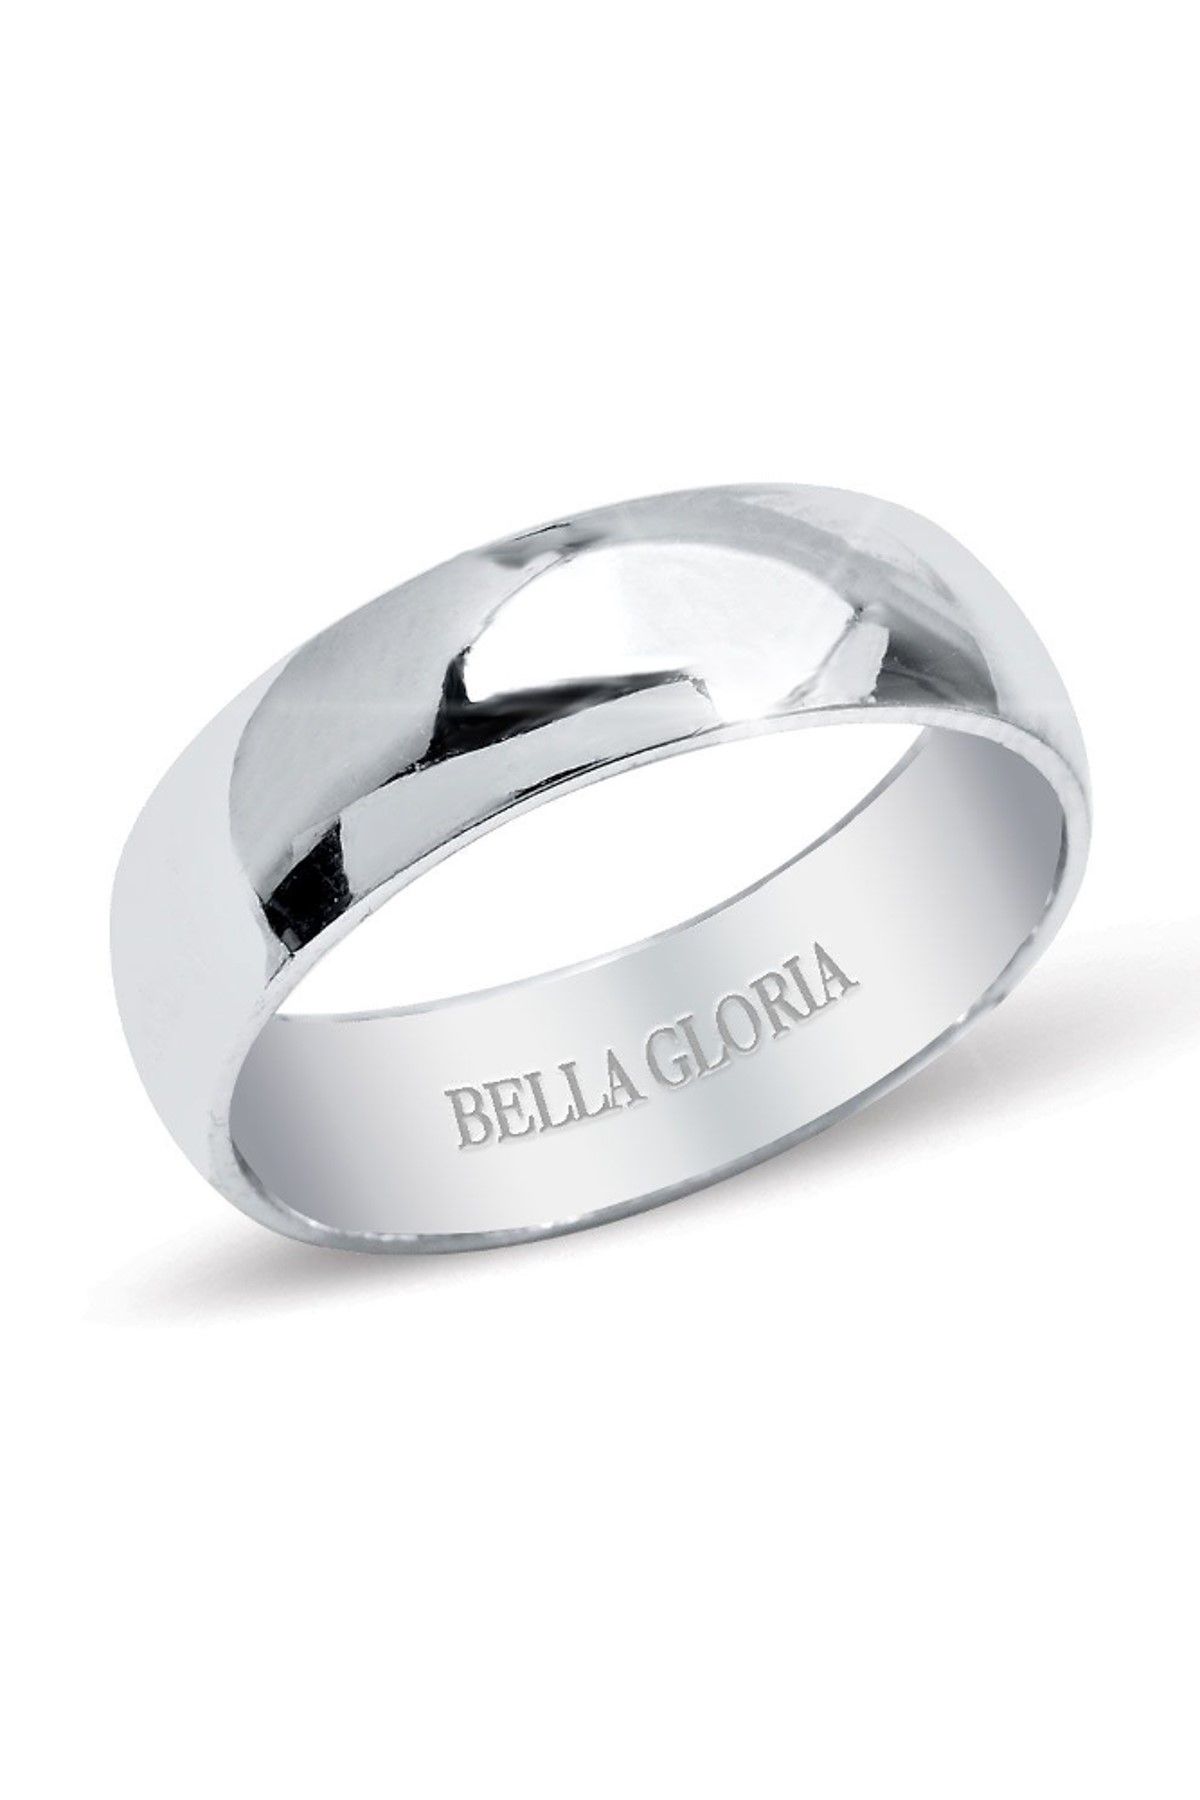 Bella Gloria Erkek Altın Kaplamalı 925 Ayar Gümüş Bombeli Alyans GA00010